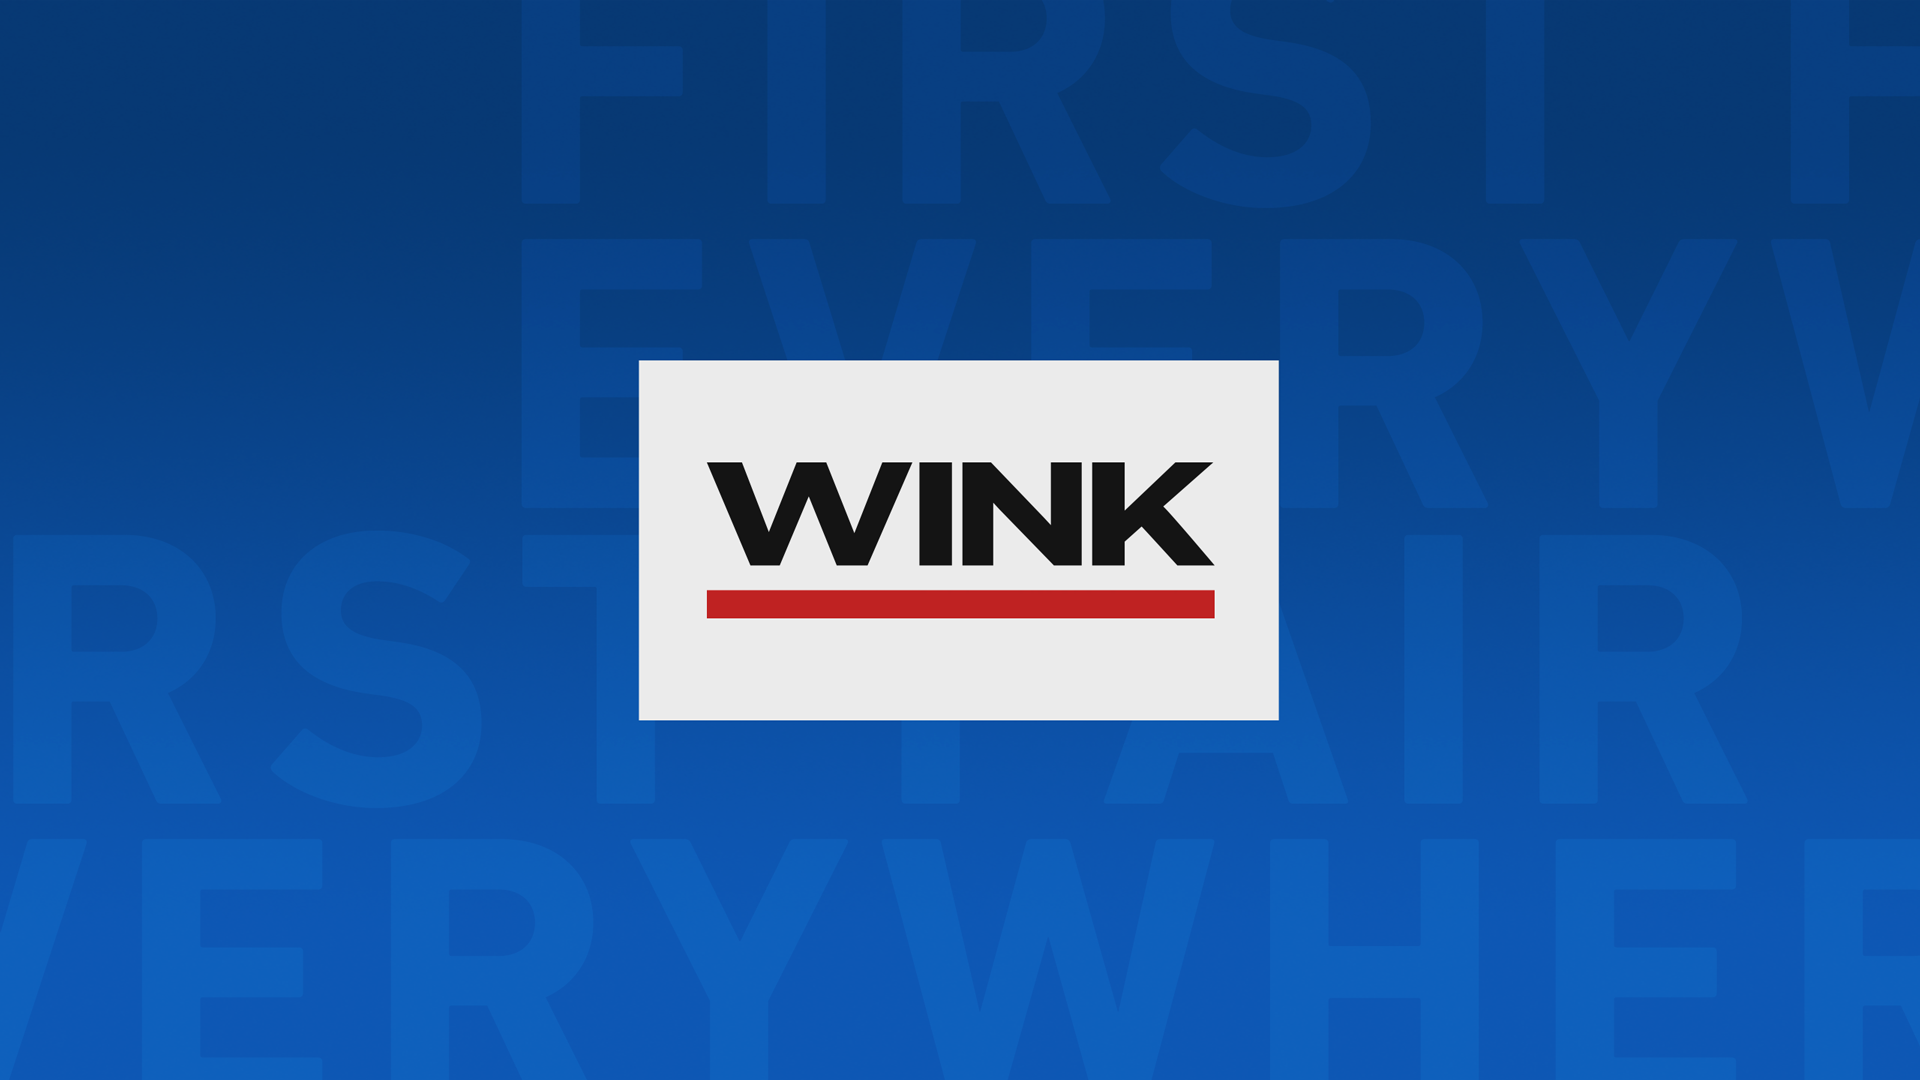 WINK News at 3